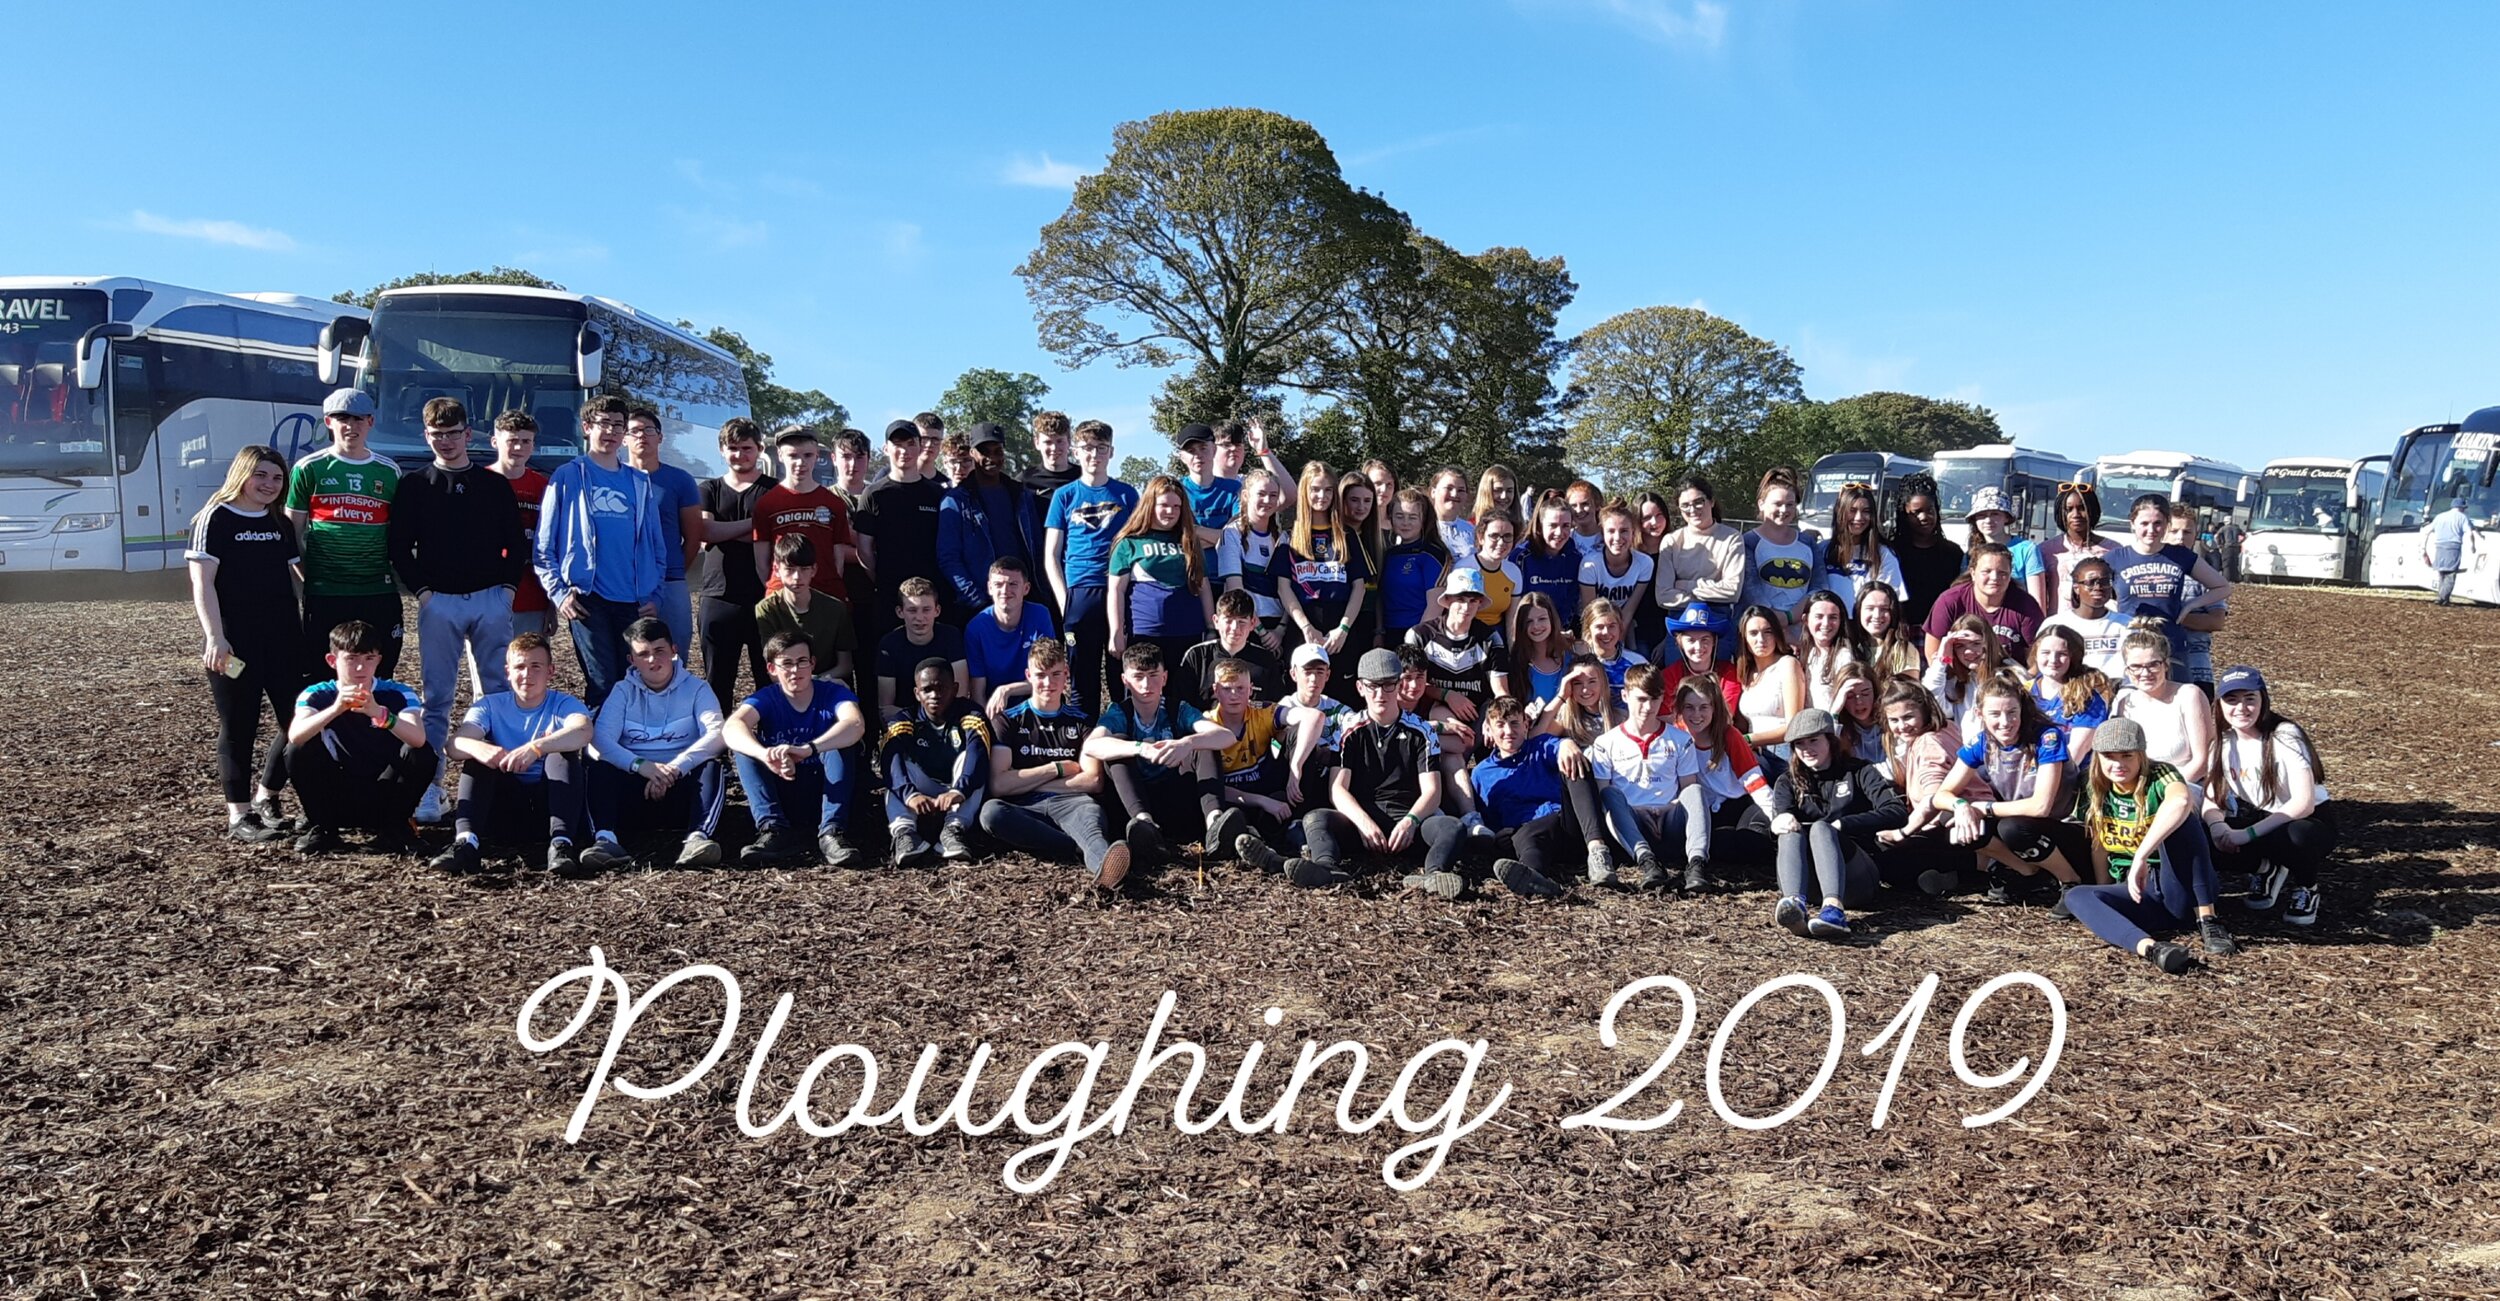 Ploughing1.jpg